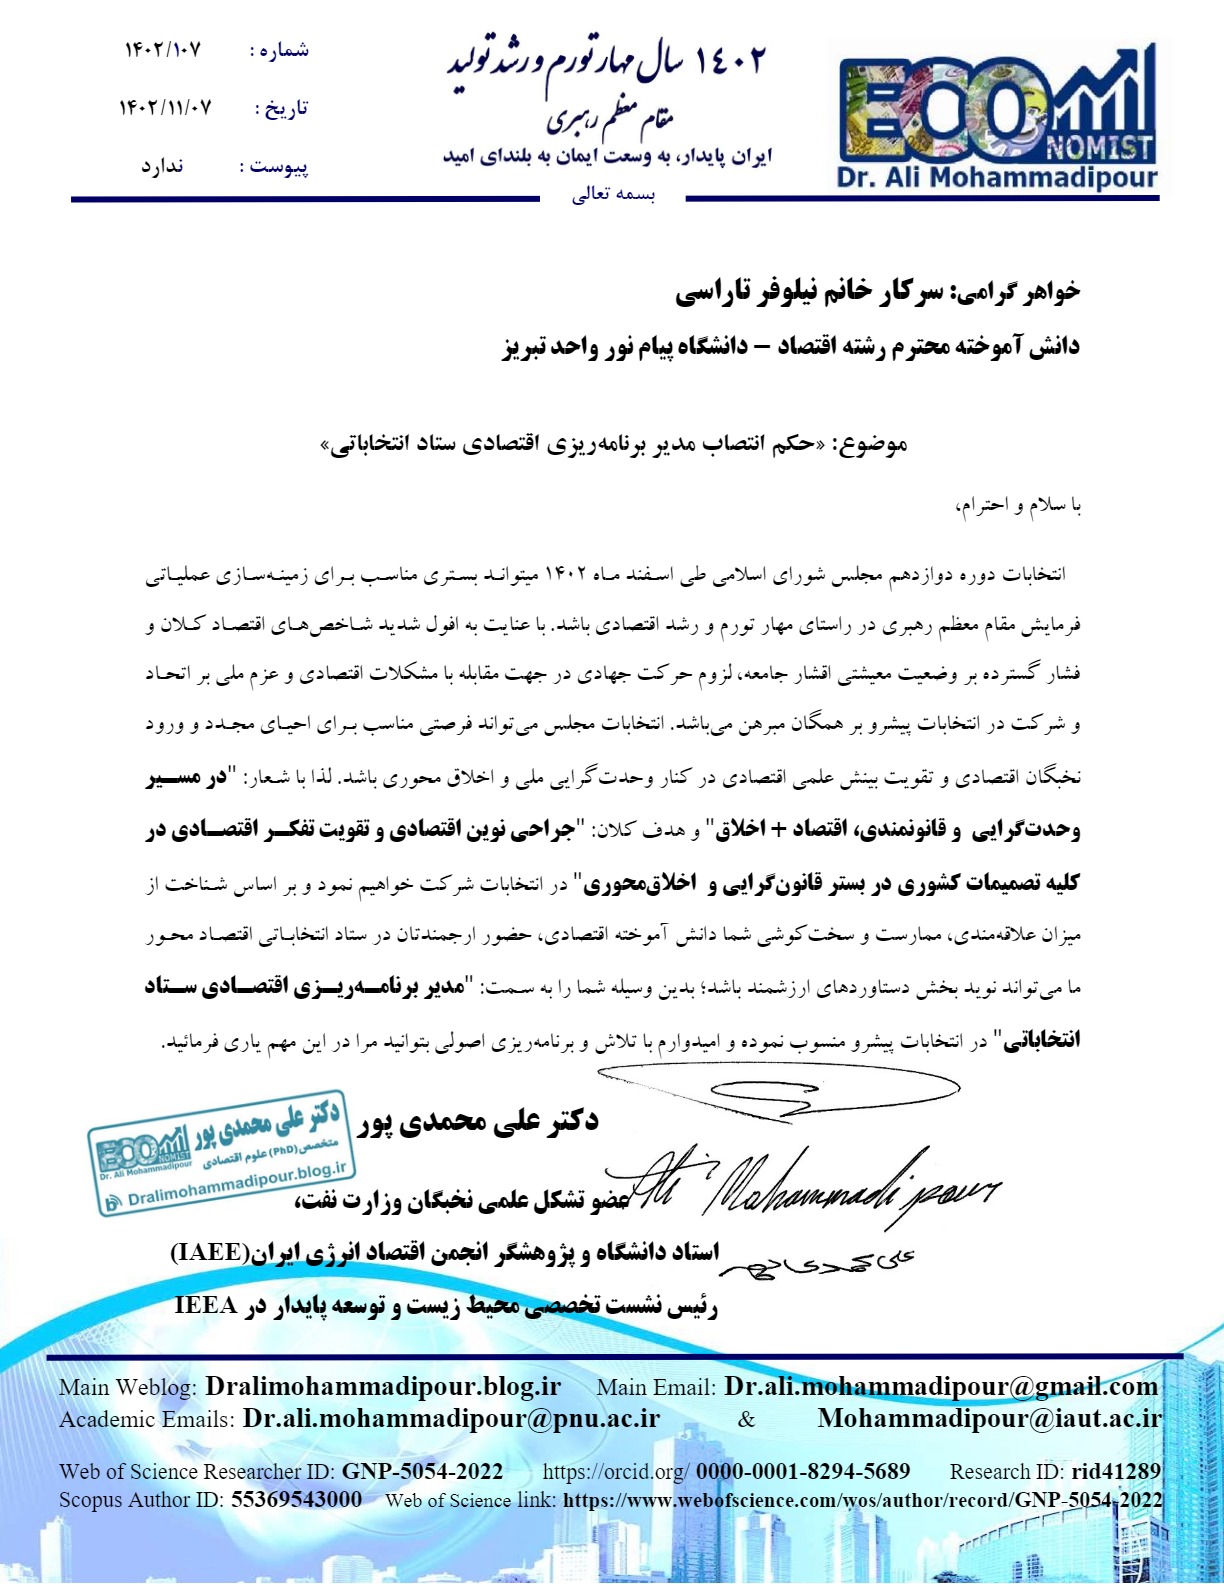 حکم انتصاب سرکار خانم نیلوفر تاراسی بعنوان مدیر برنامه ریزی اقتصادی ستاد دکتر علی محمدی پور صادر گردید.